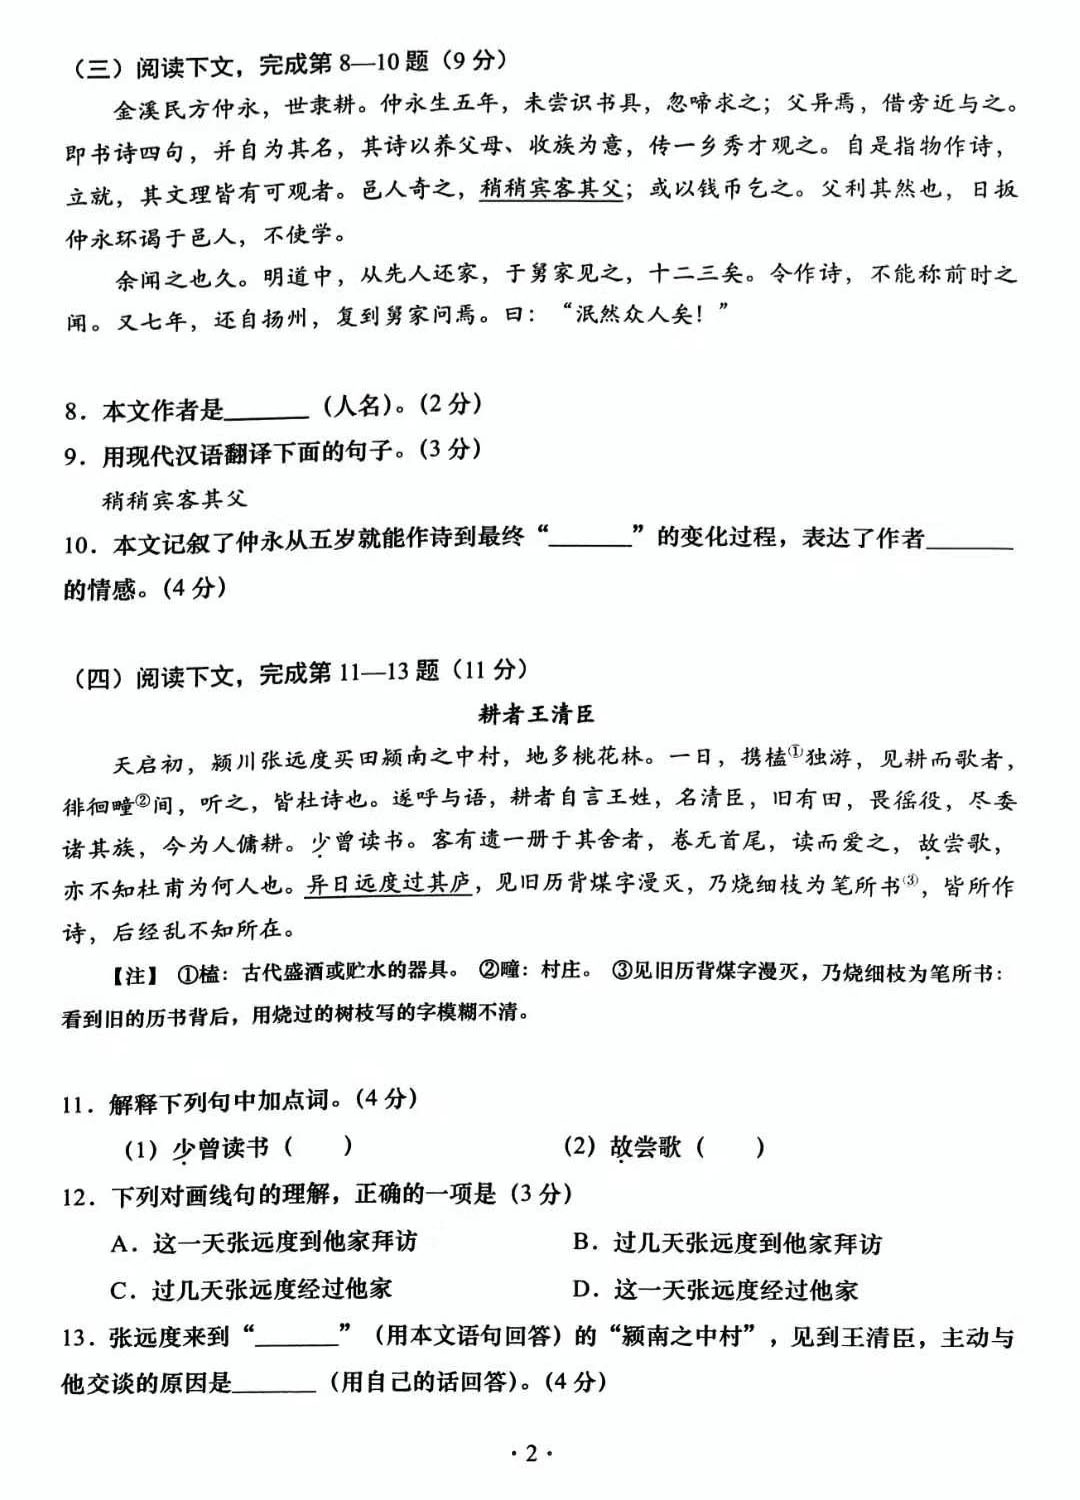 2019年上海中考《语文》真题及答案已公布